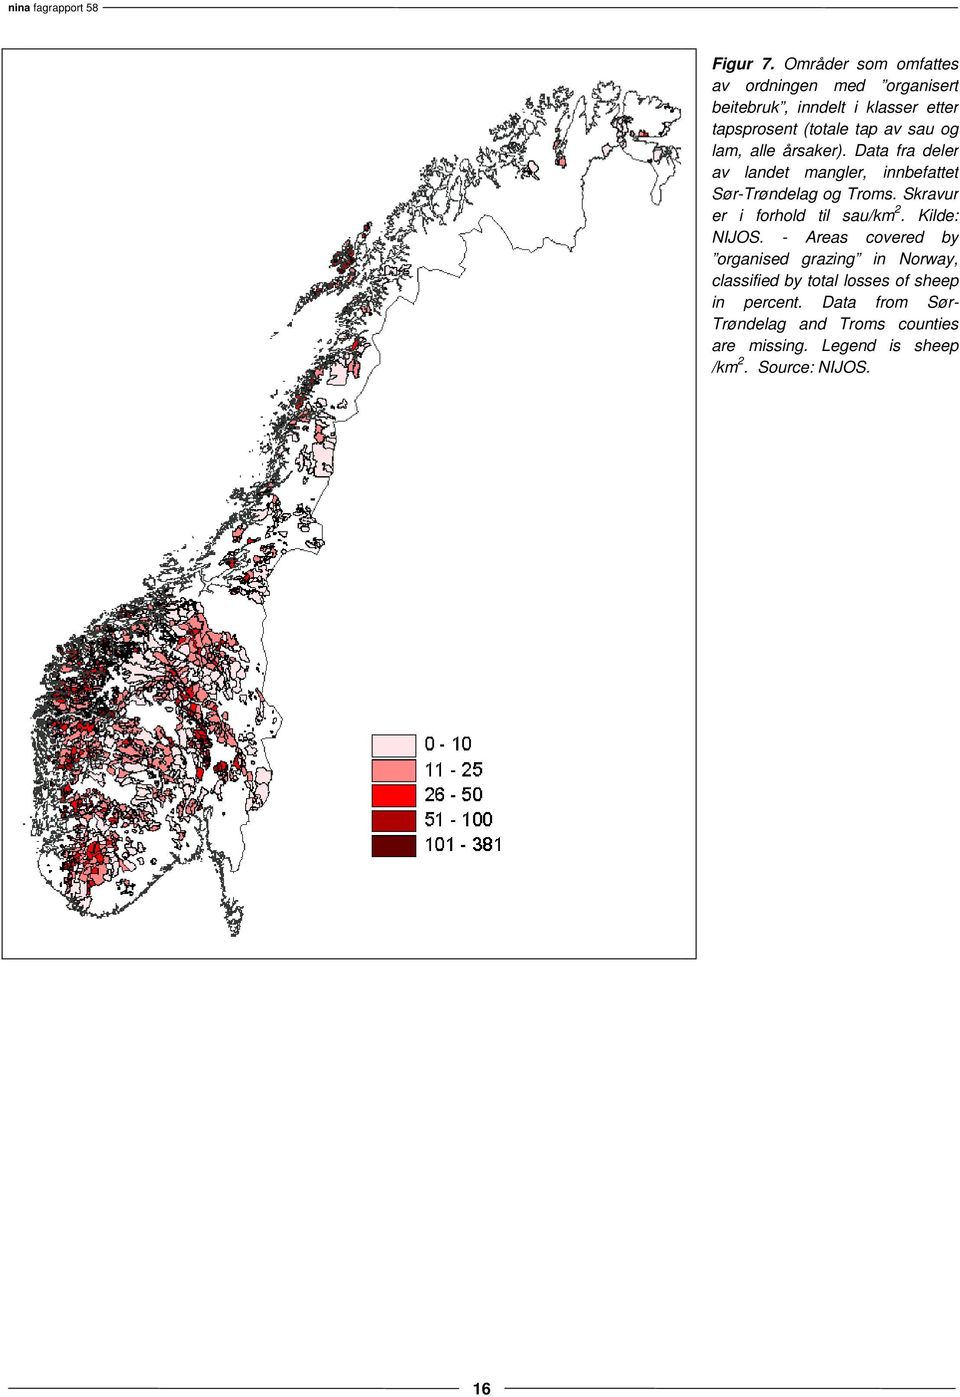 og lam, alle årsaker). Data fra deler av landet mangler, innbefattet Sør-Trøndelag og Troms.